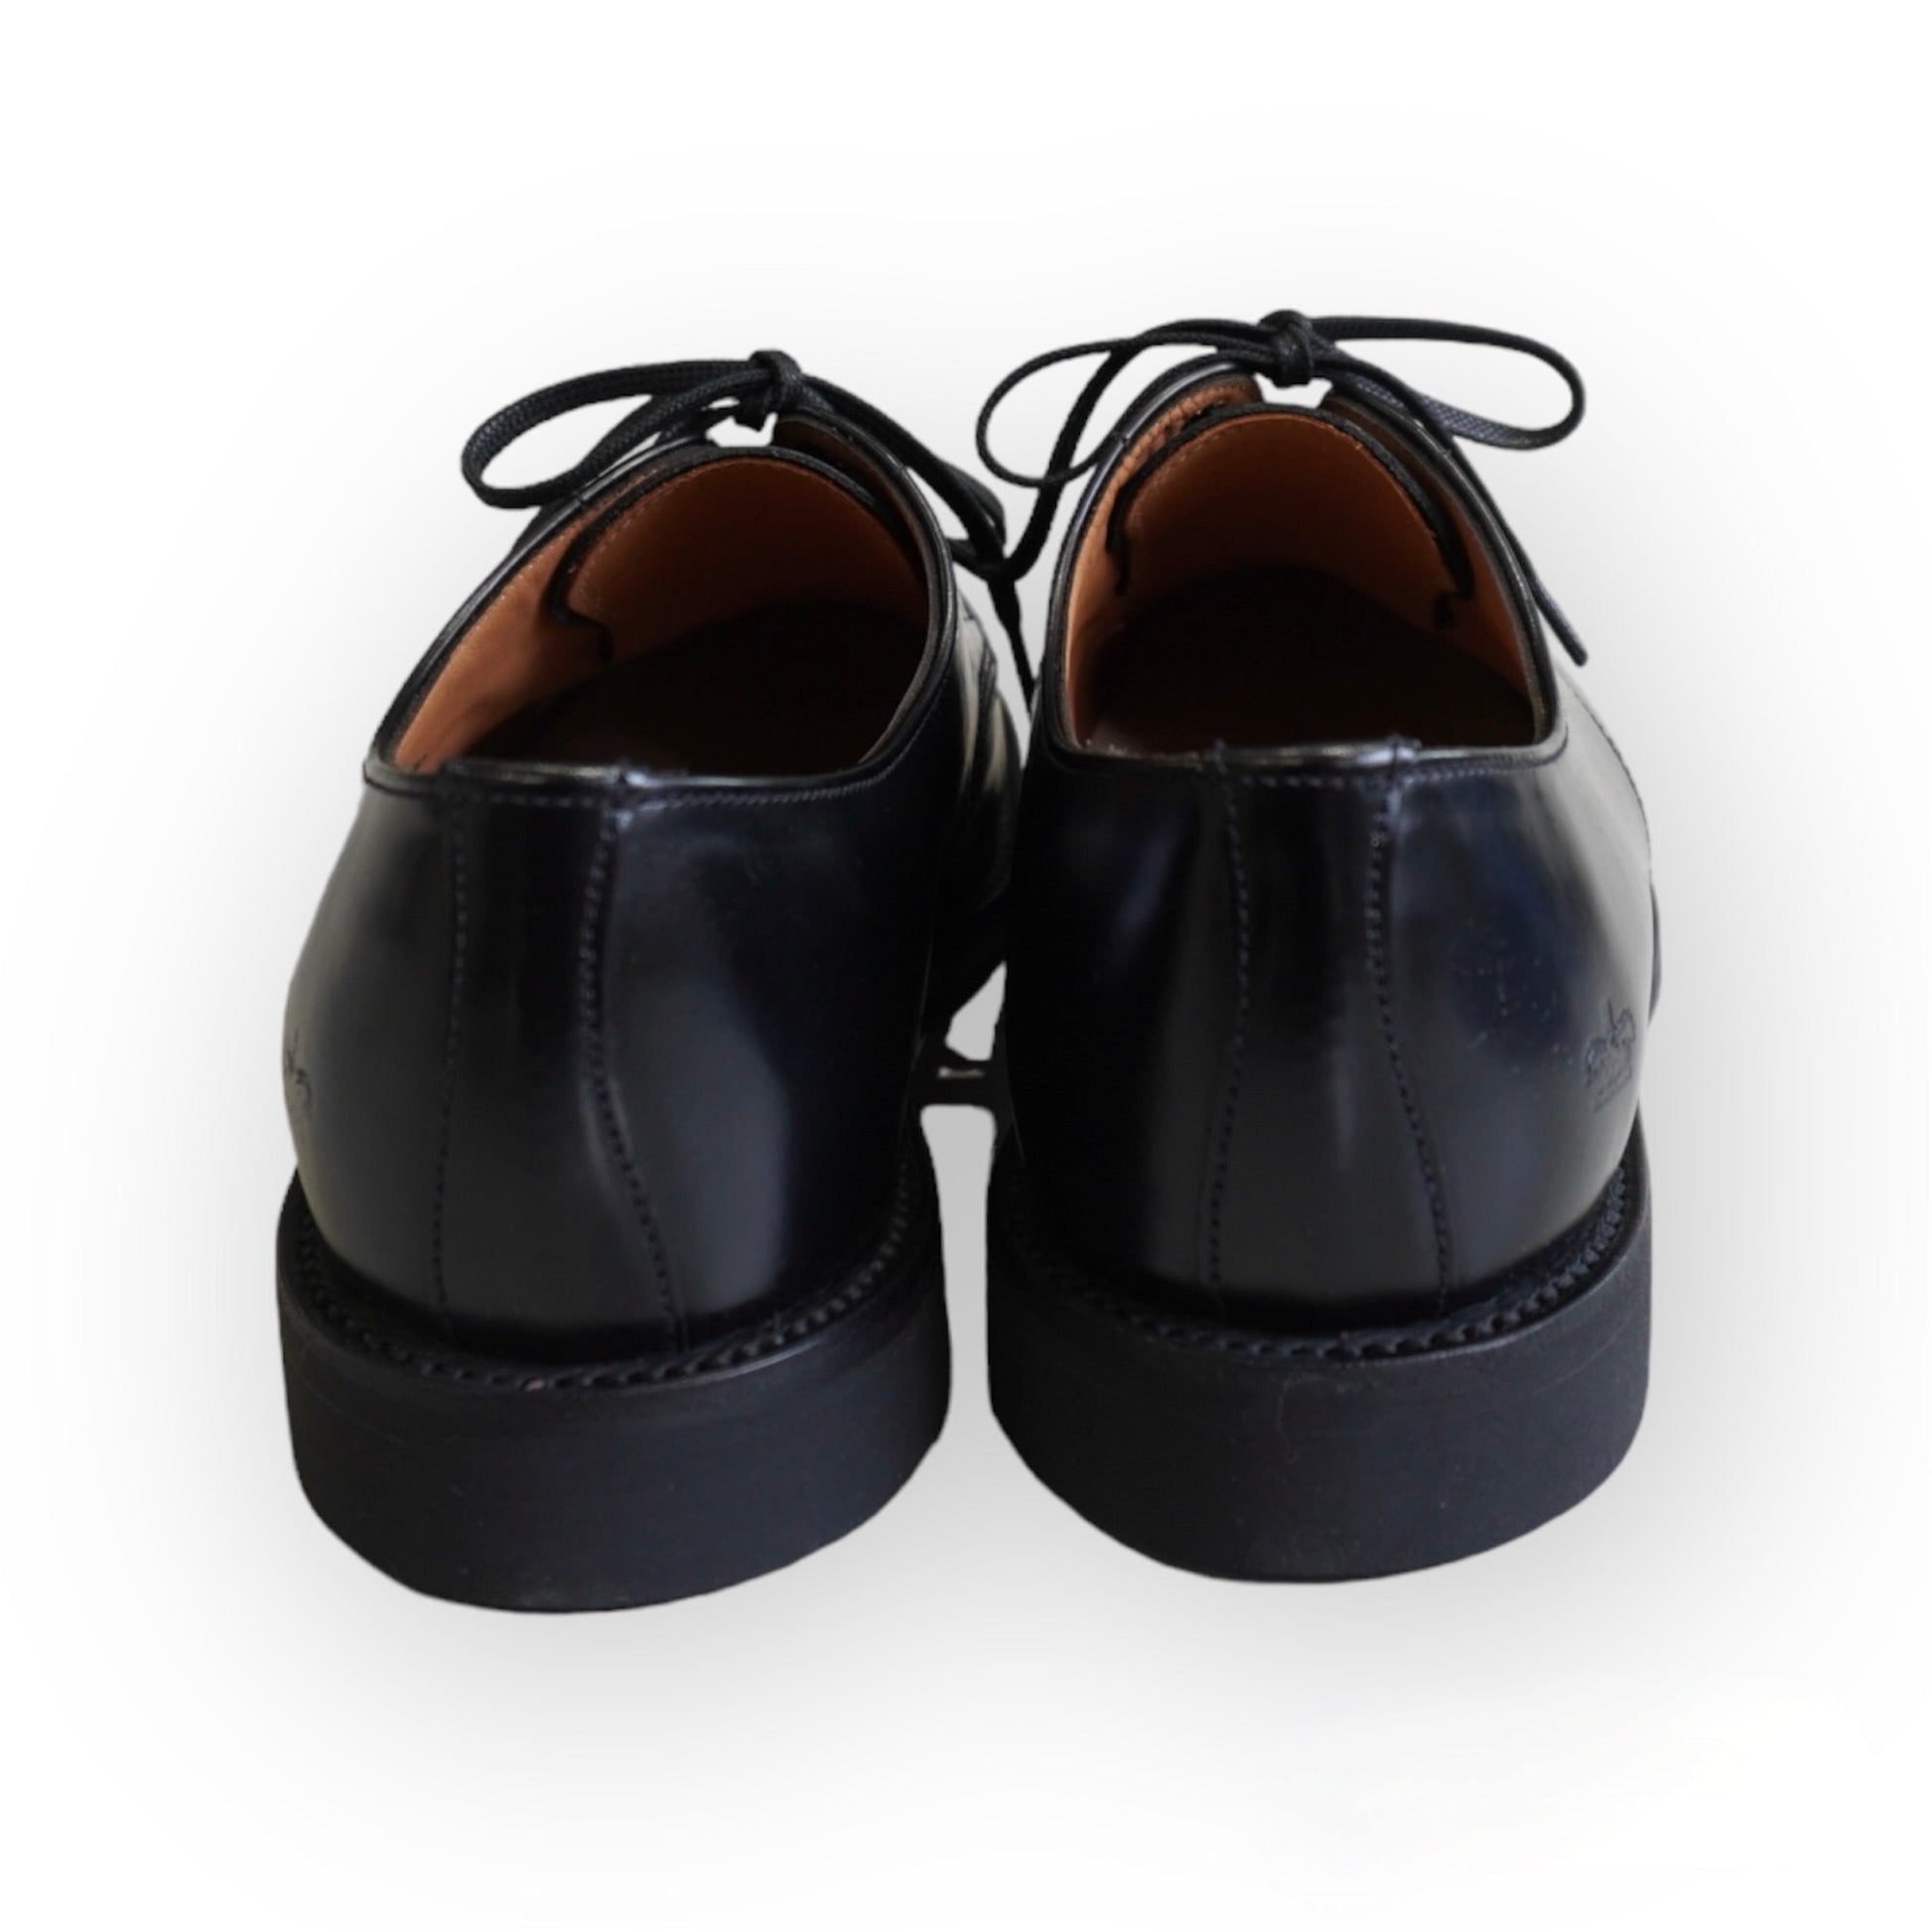 [SANDERS] Military Derby Shoe 革靴 - #shop_name #アパルティール# #名古屋# #セレクトショップ#